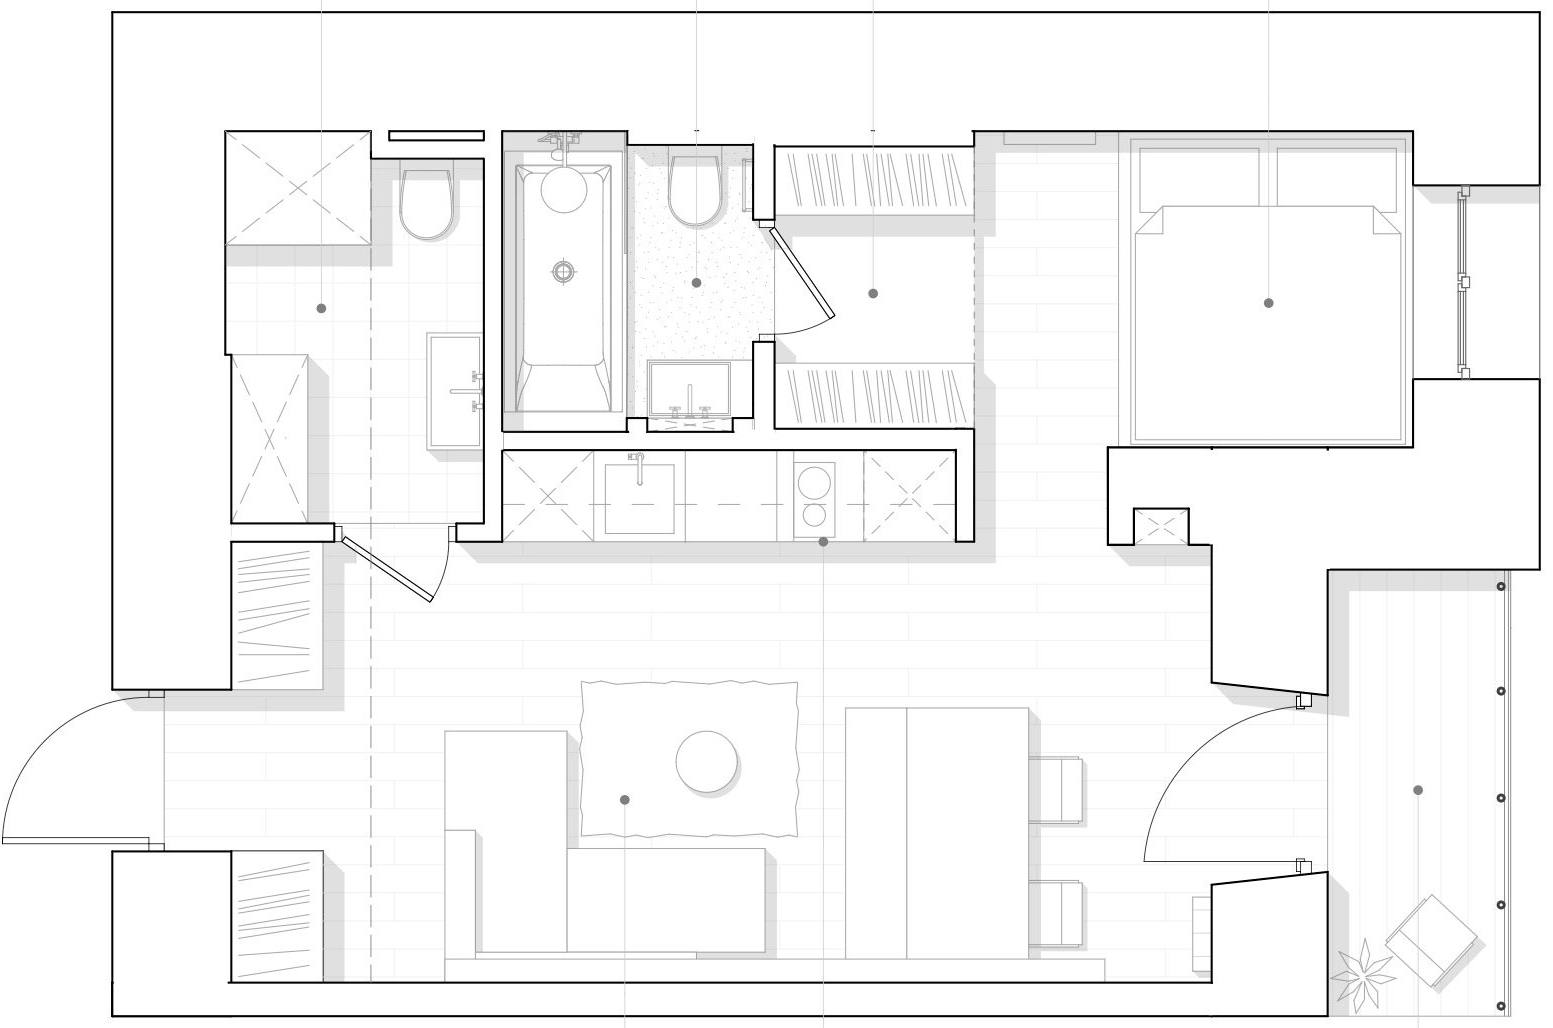 Modern, minimalista lakberendezés 38m2-en, egyedi bútorokkal és megoldásokkal